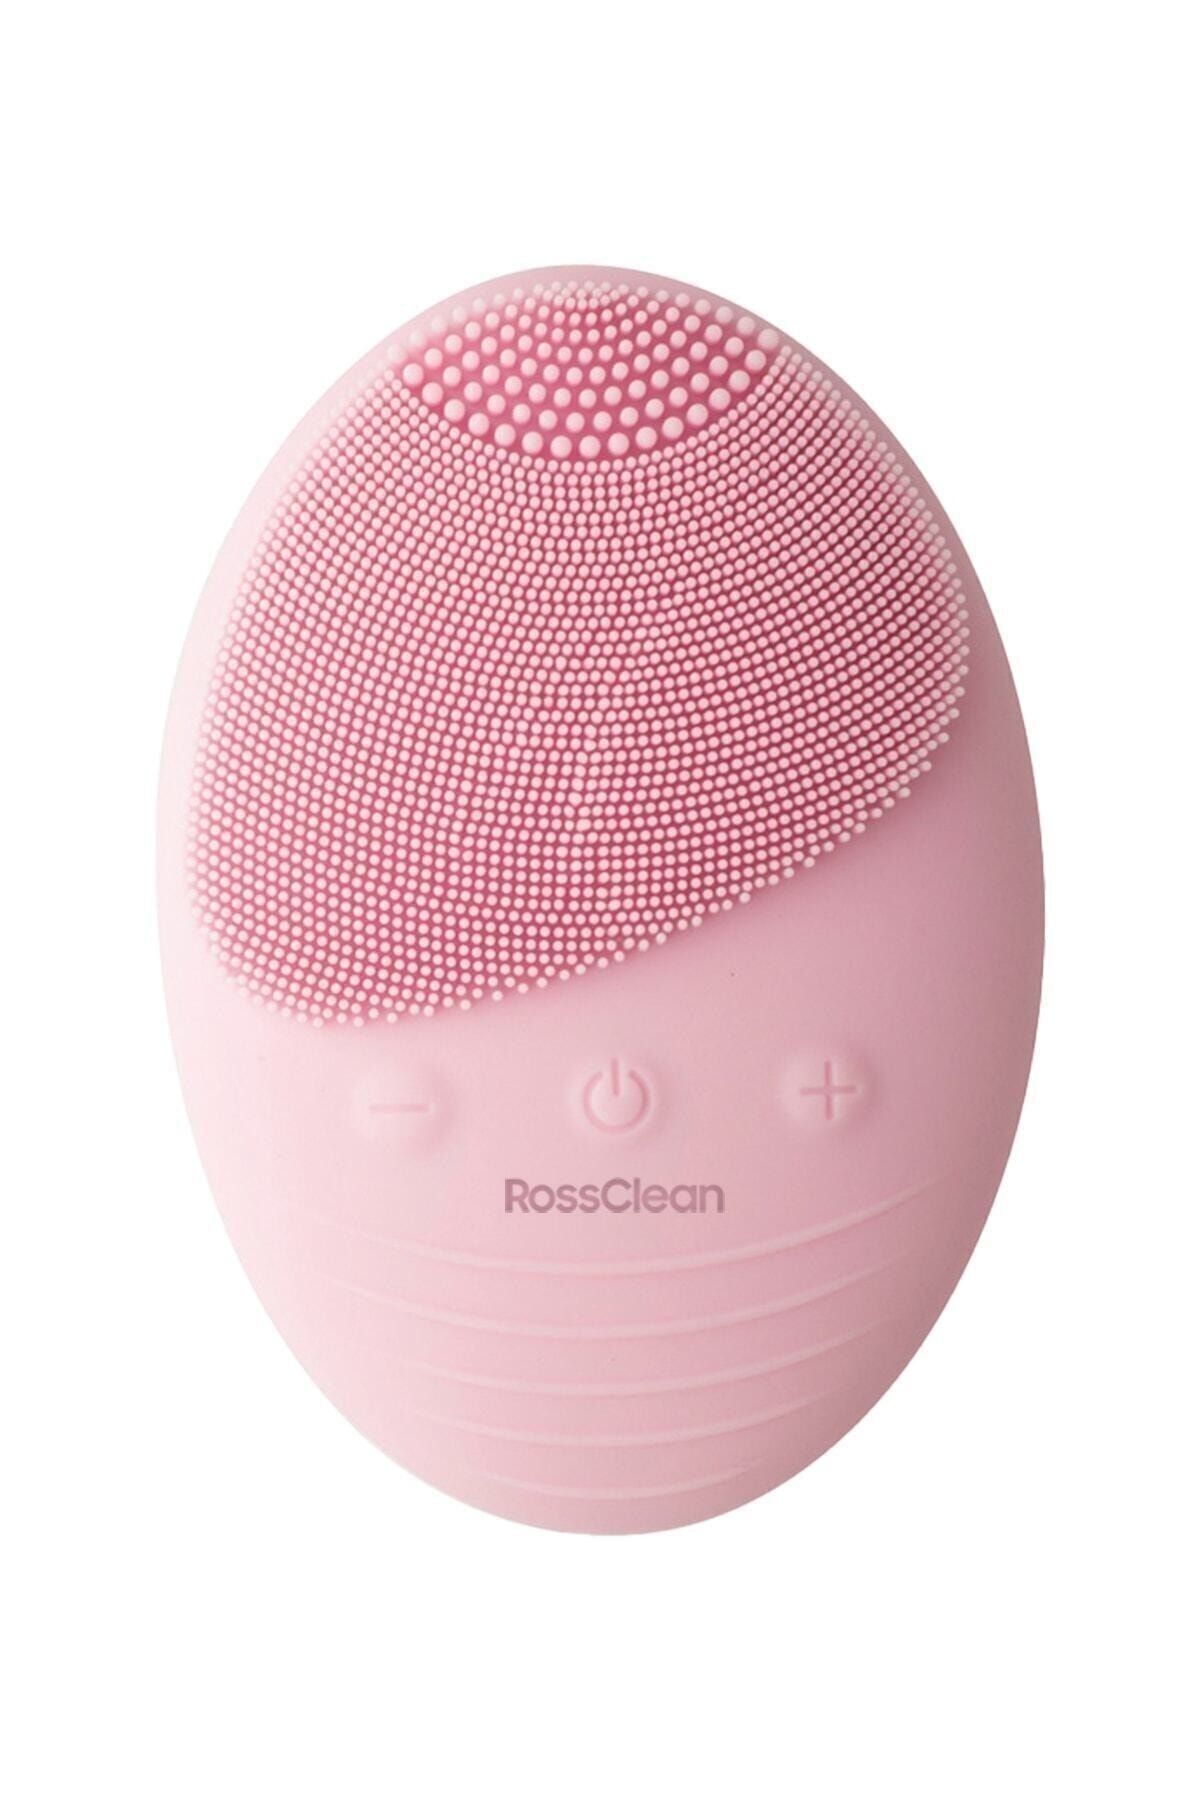 RossClean Pro Yüz Temizleme Ve Masaj Cihazı  5 Kademeli  Fototerapi Modu  Kablosuz Şarjlı Açık Pembe